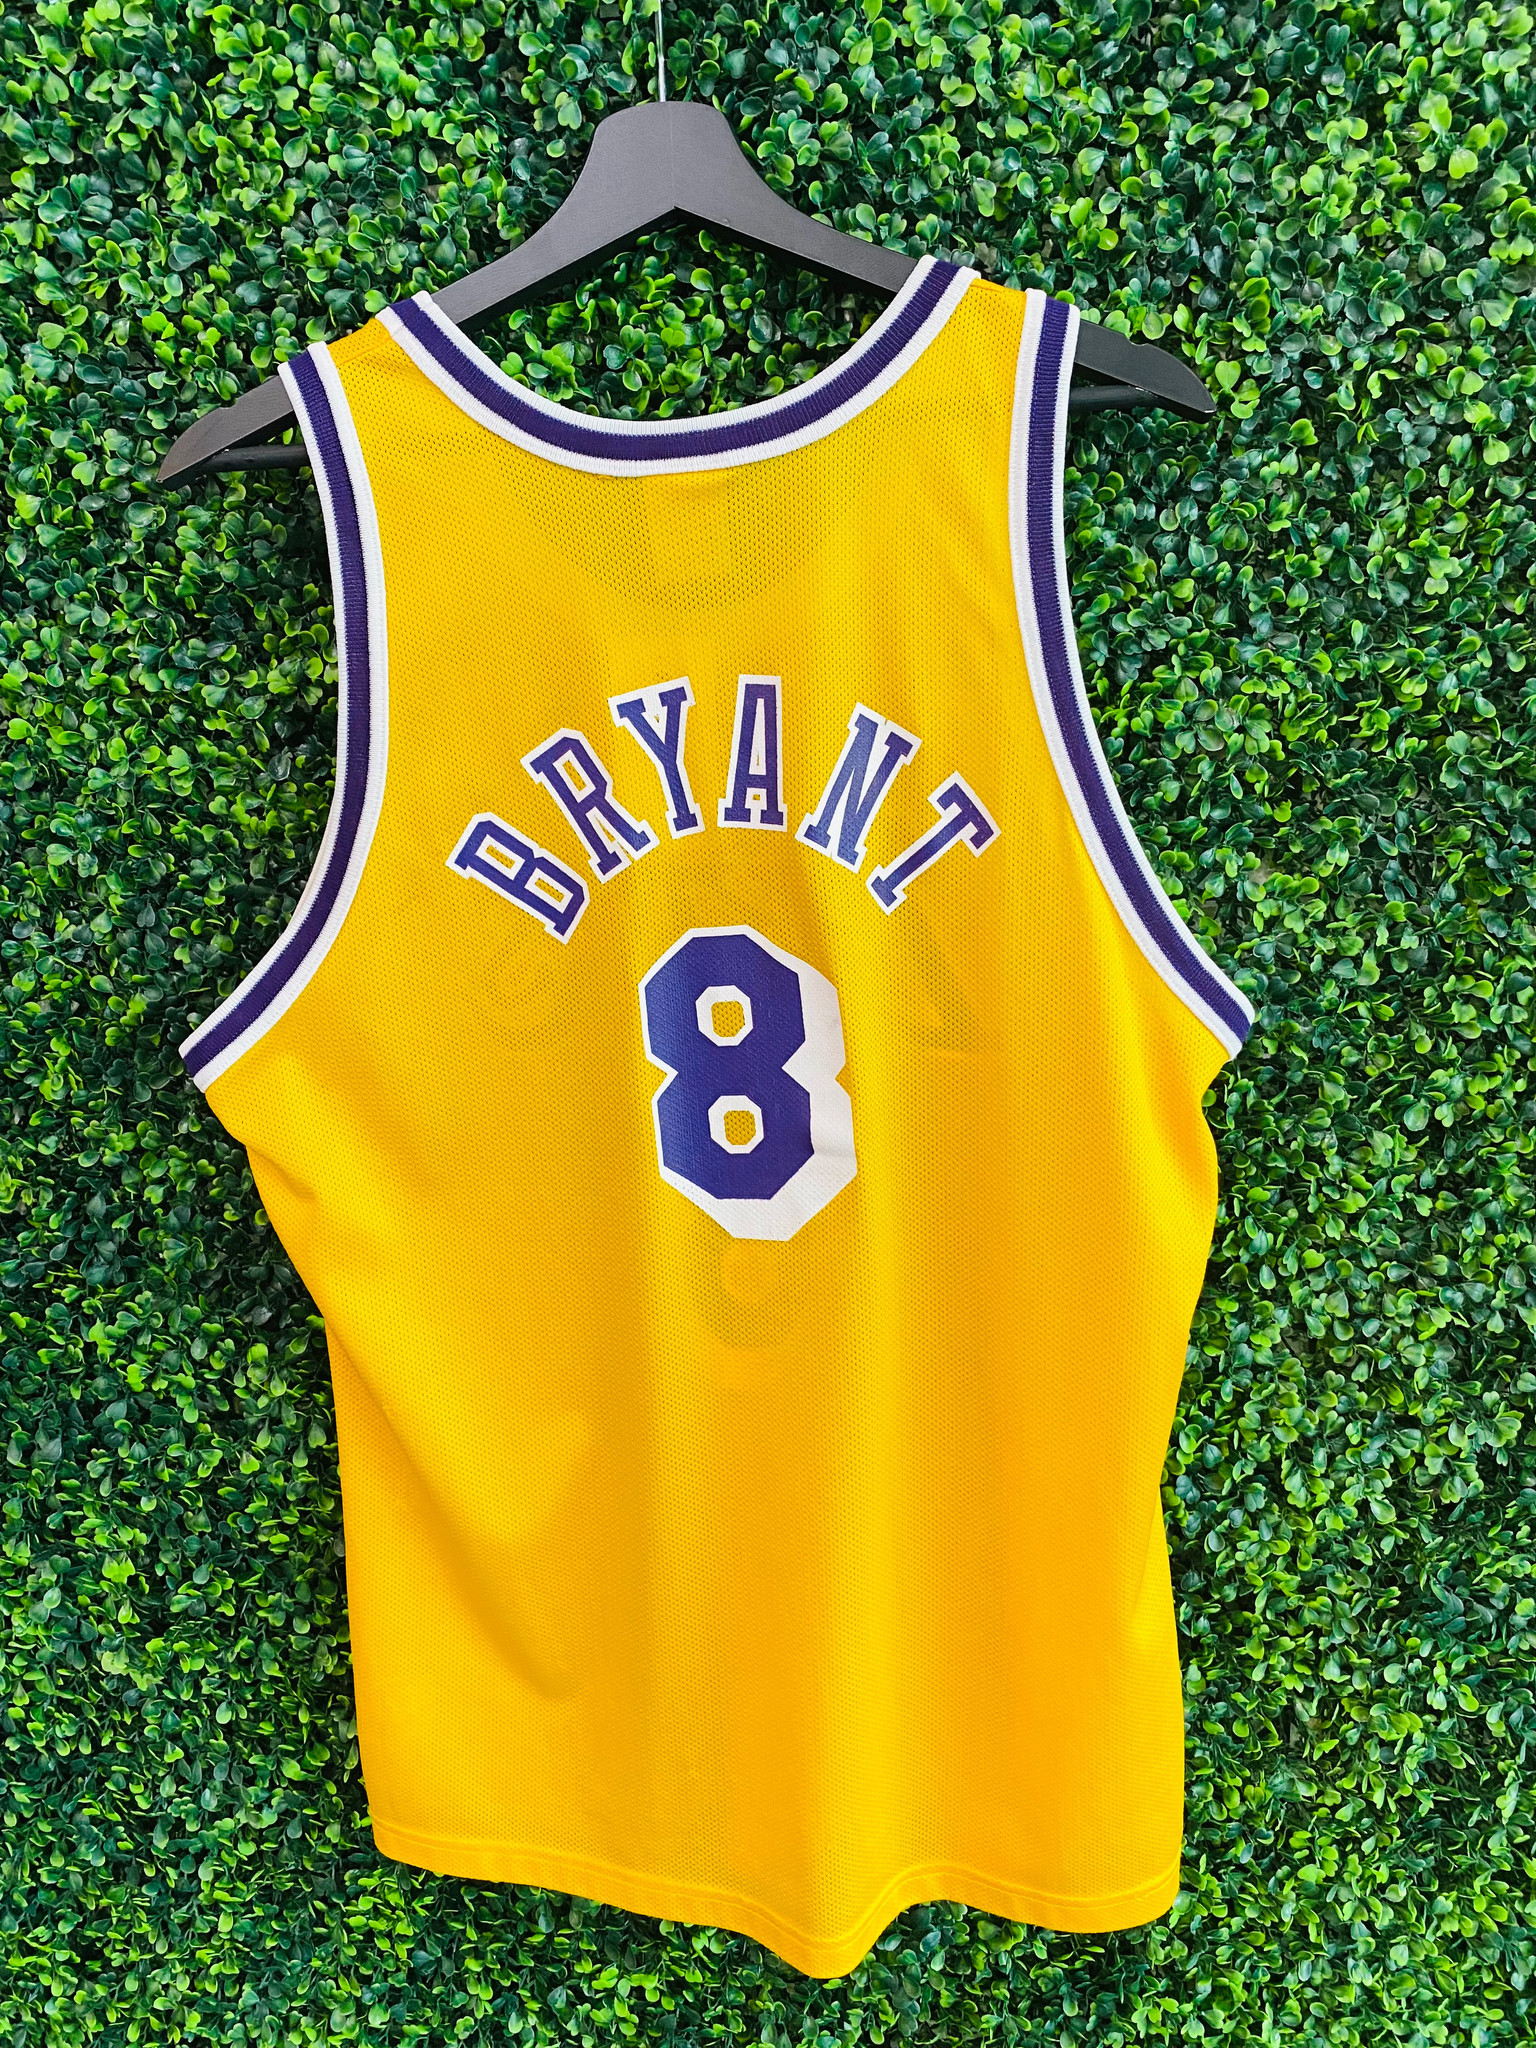 NBA Jersey Kobe Bryant Jersey champion Lakers Jersey